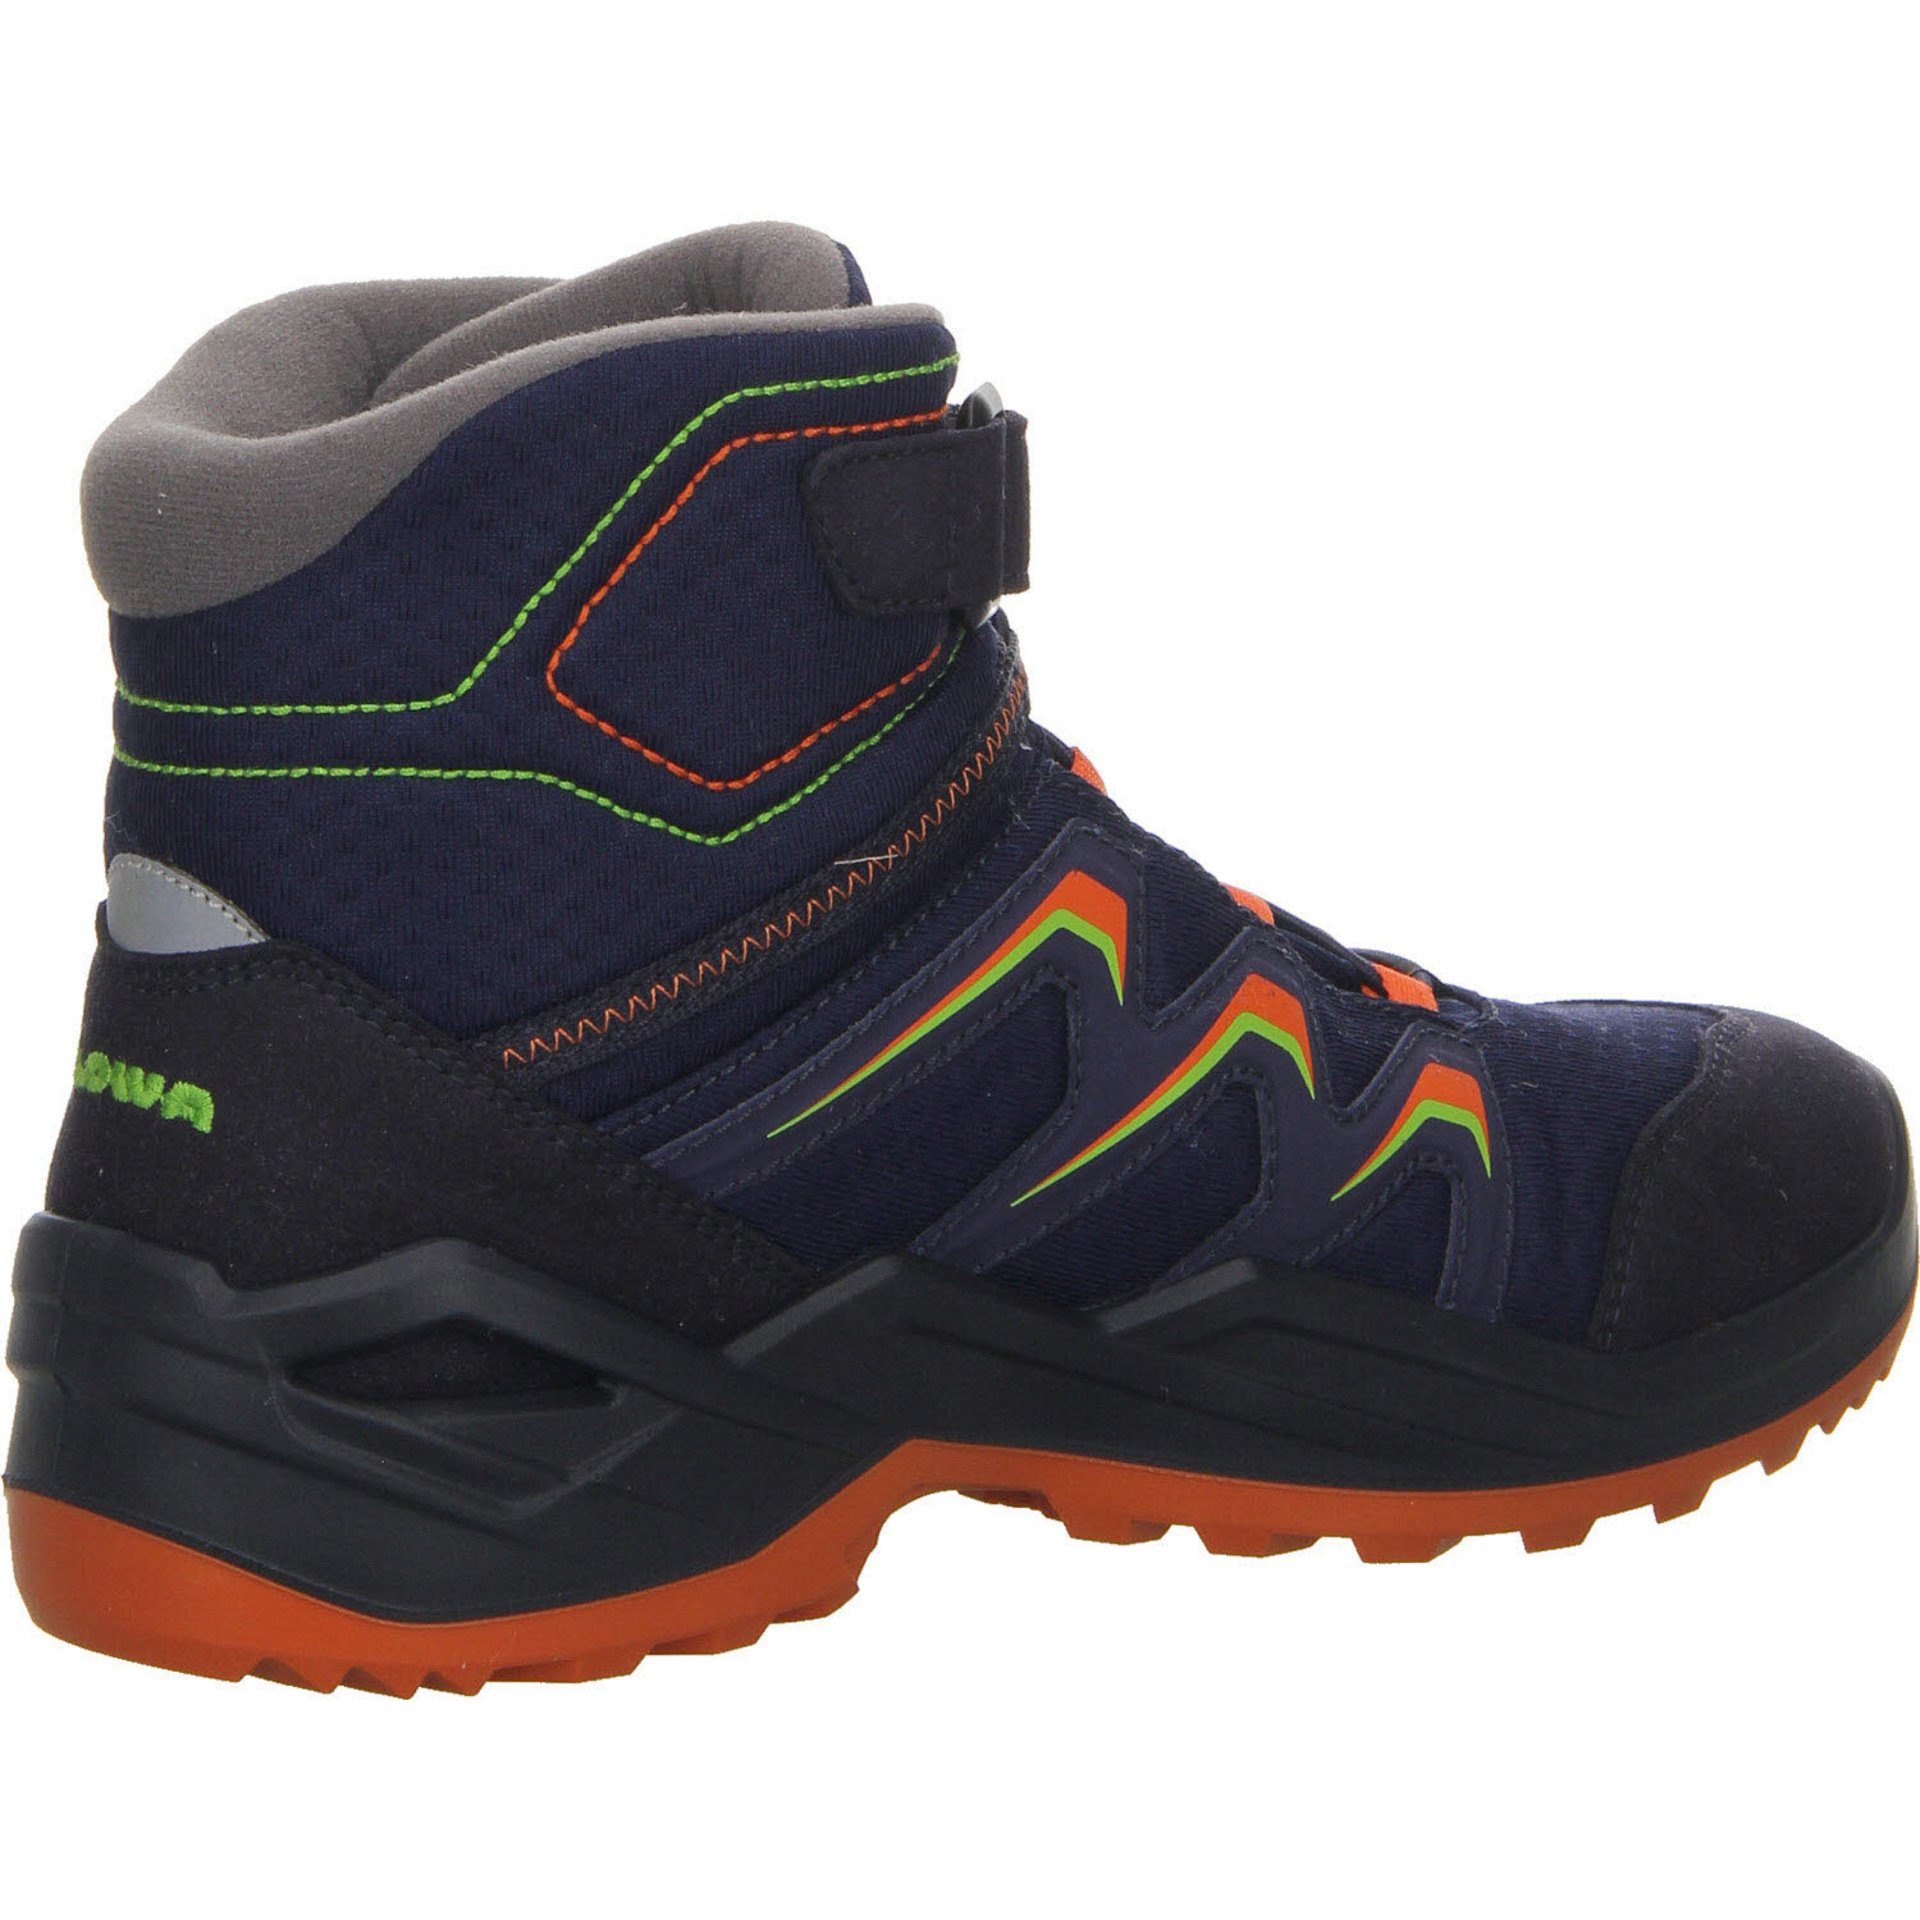 Stiefel Warm Stiefel Lowa Boots navy/orange Schuhe GTX Jungen Maddox Textil